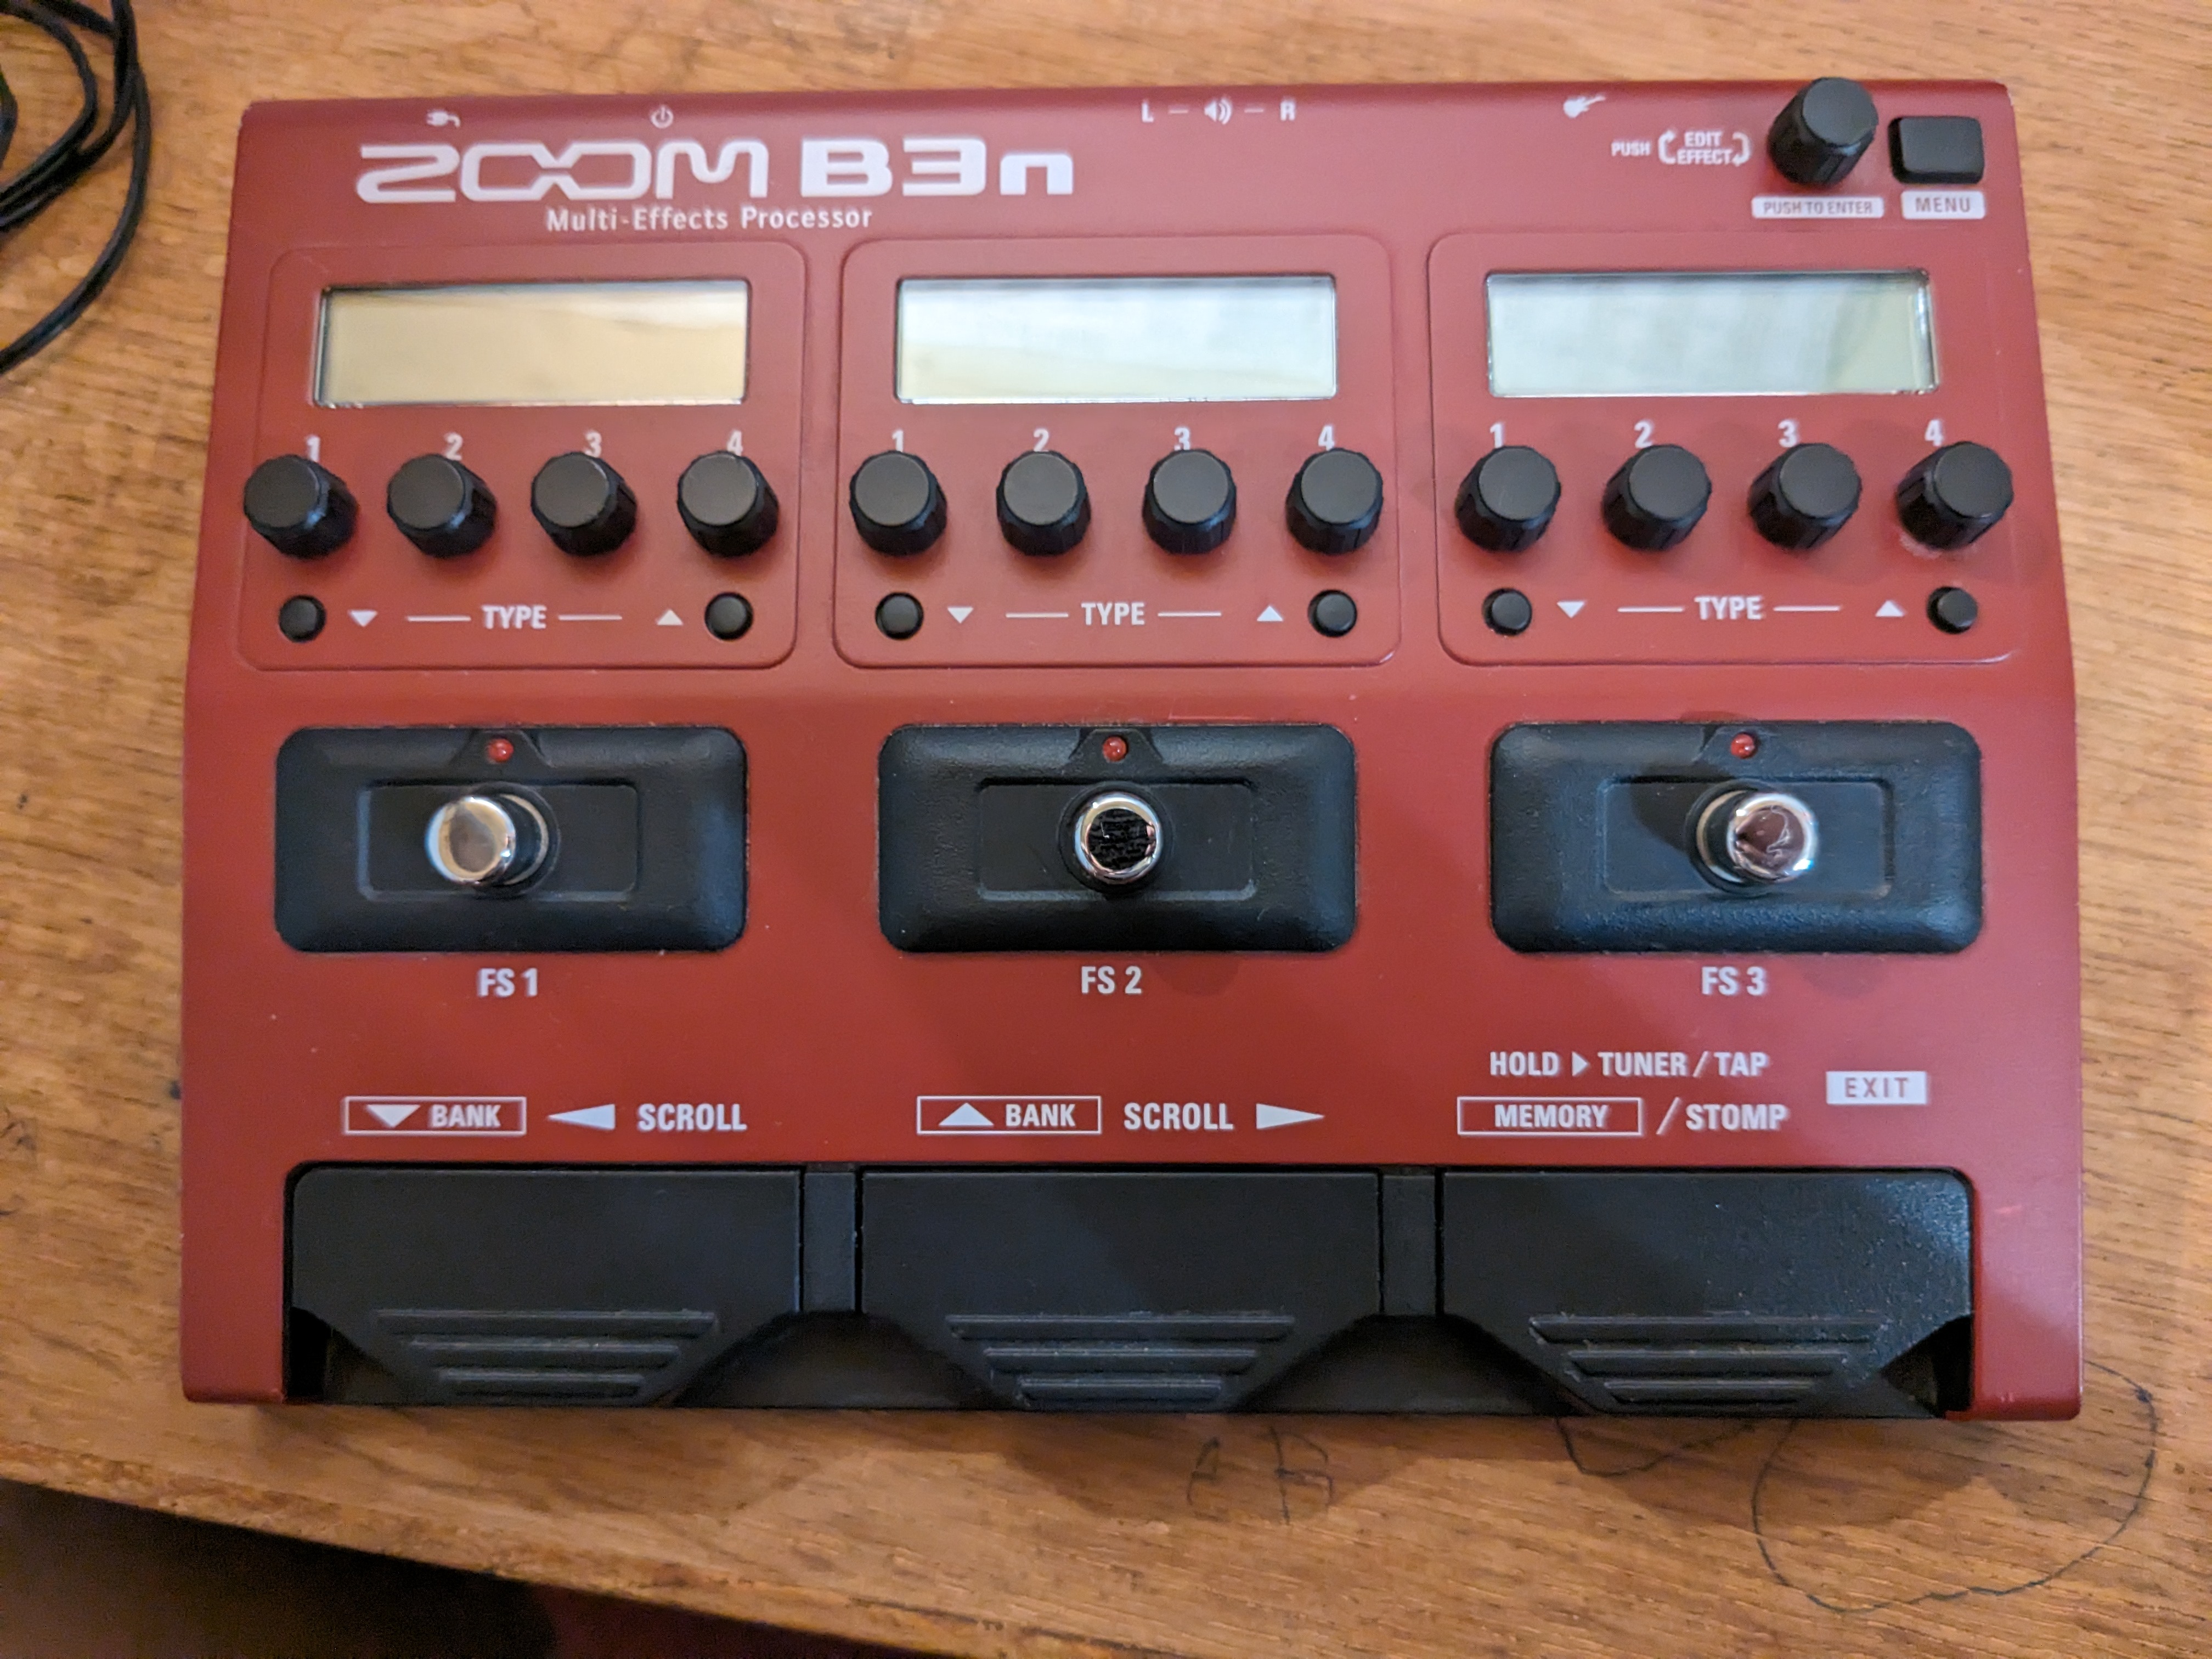 B3n - Zoom B3n - Audiofanzine